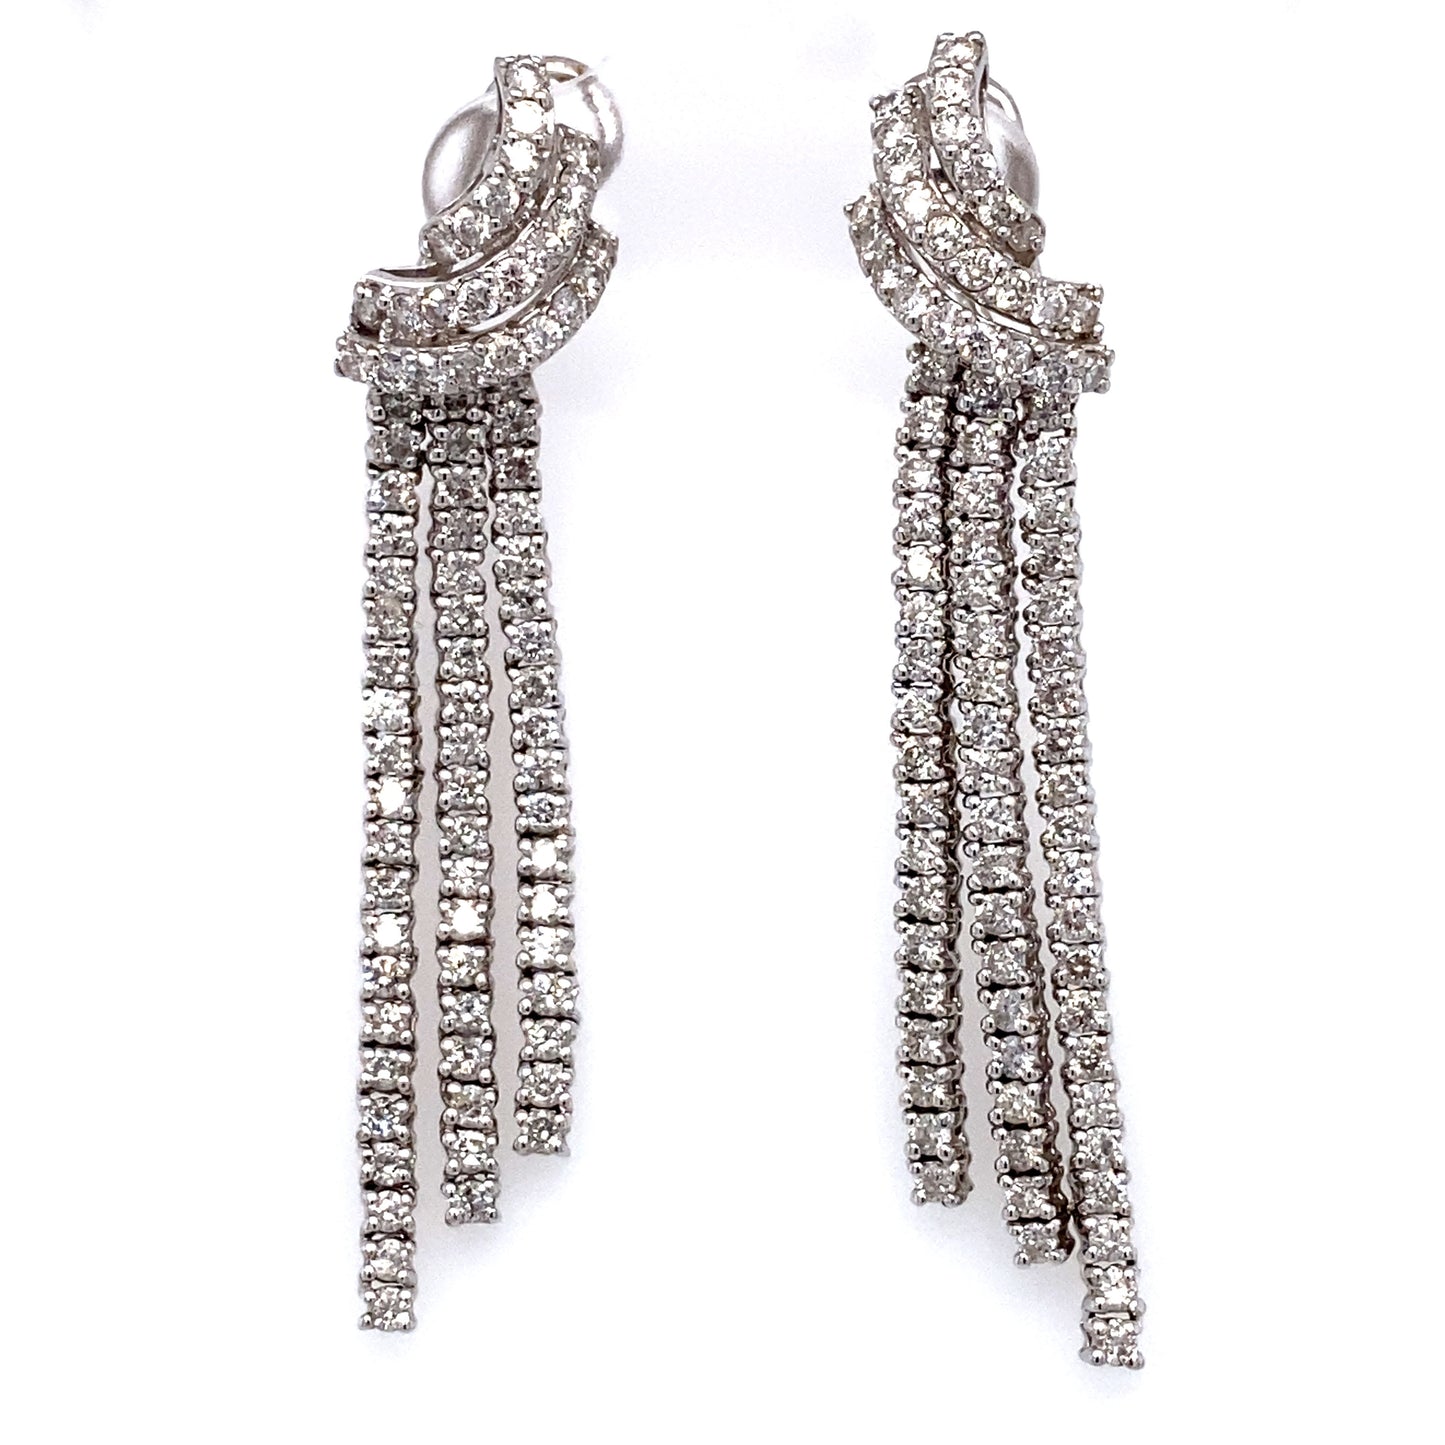 Circa 1980 Italian Three Row Diamond Dangle Earrings in 18 Karat White Gold